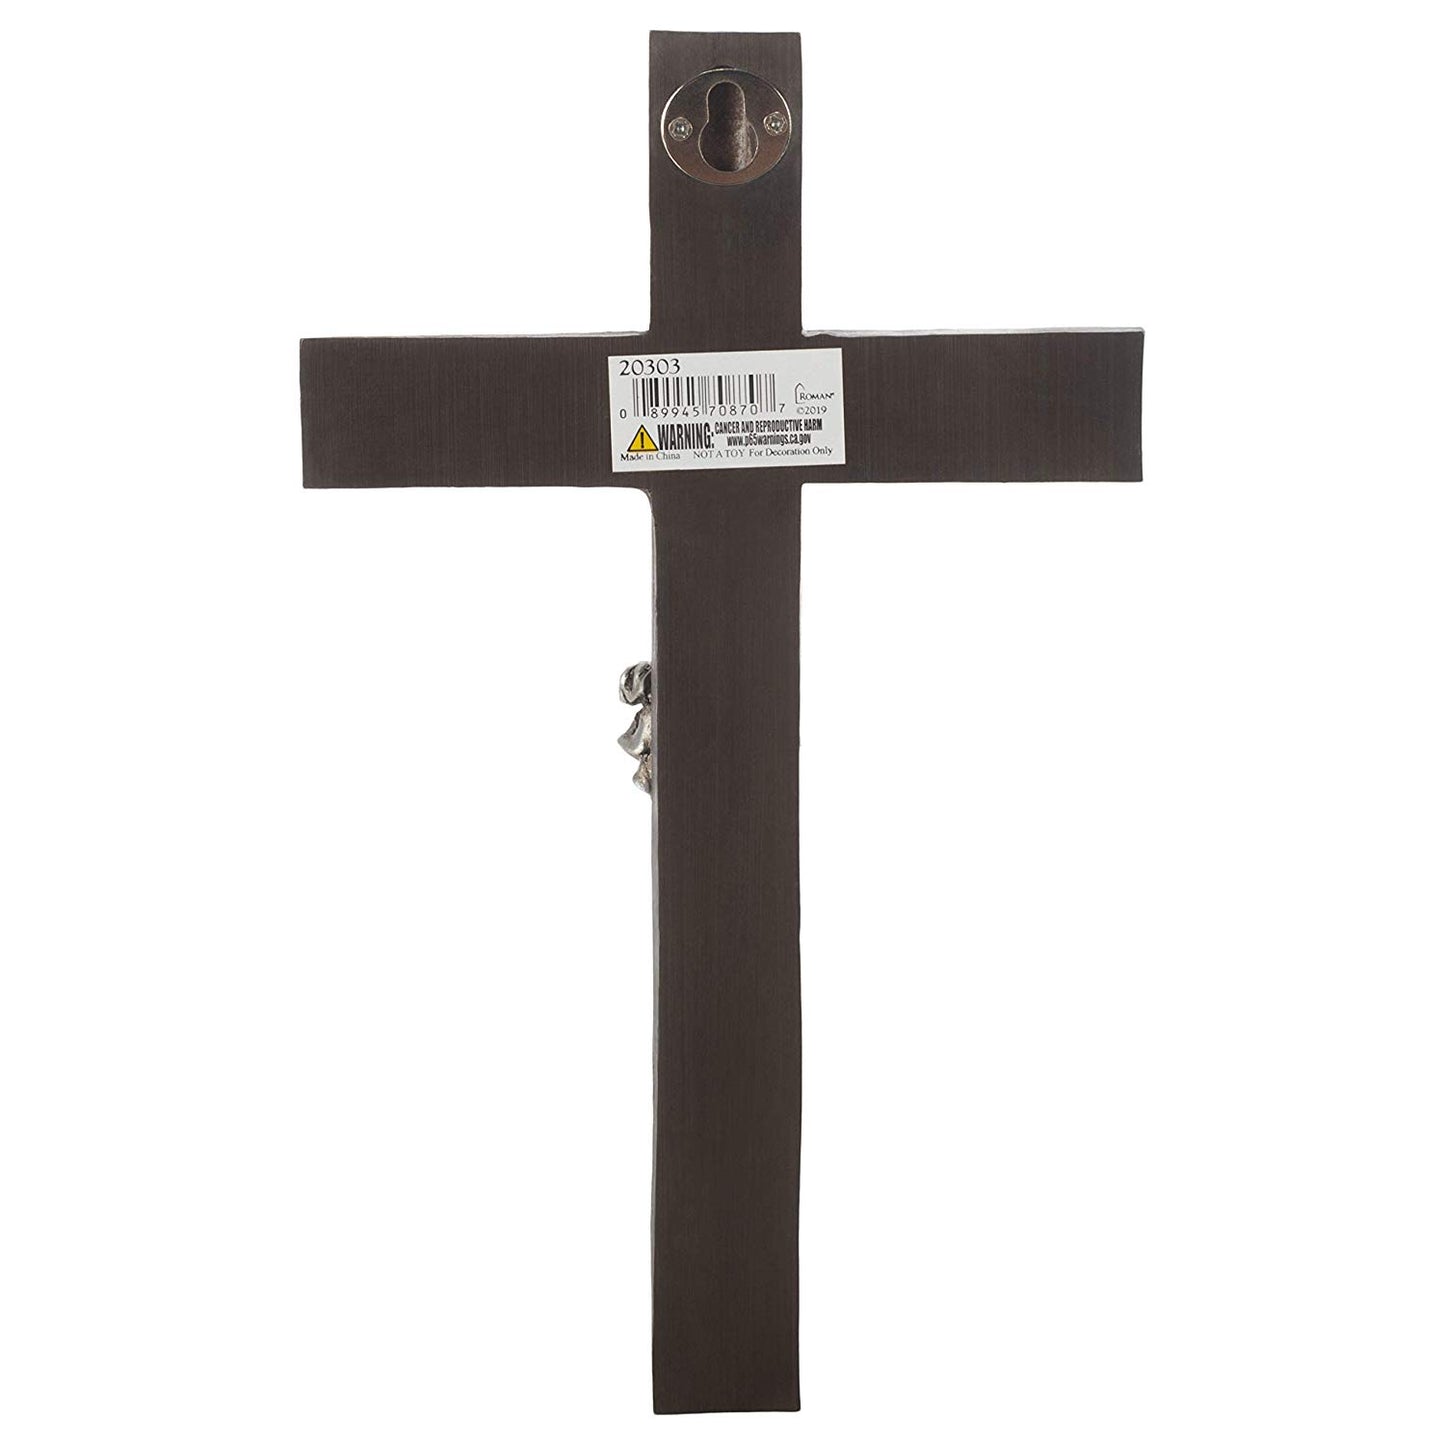 Silver Tone Crucifix